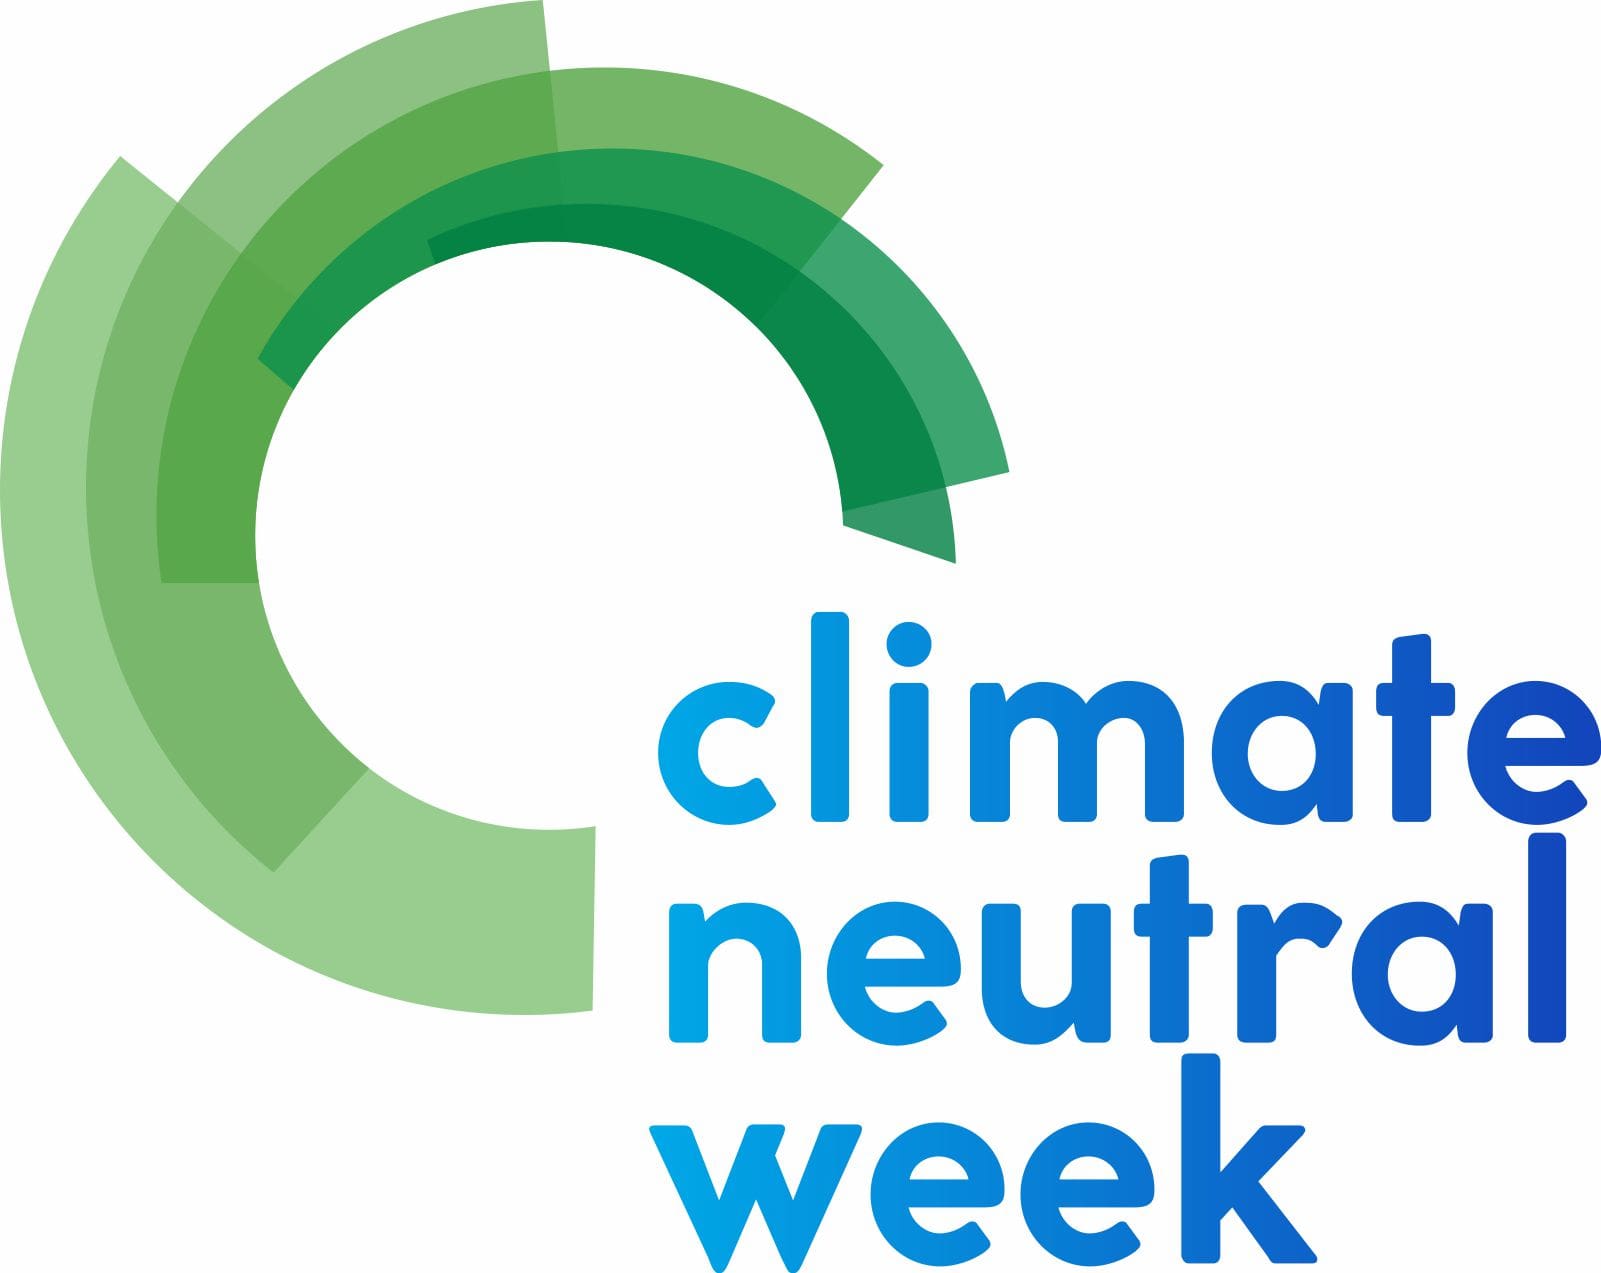 Εβδομάδα Κλιματικής Ουδετερότητας από τις 30 Μαΐου έως και τις 5 Ιουνίου - Πρόγραμμα δράσεων